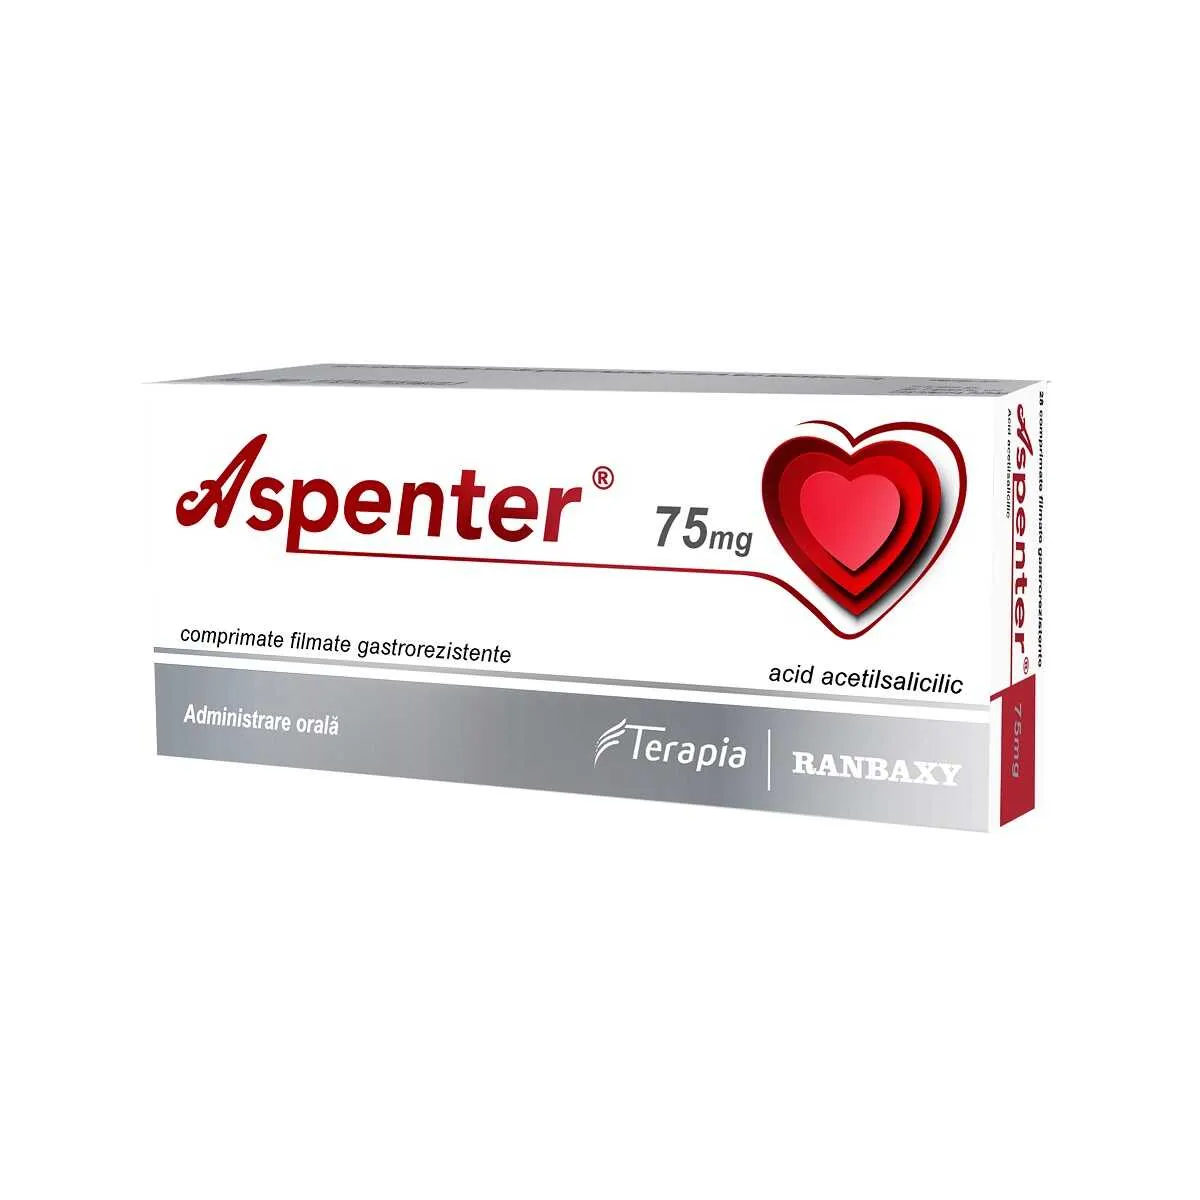 Aspenter 75 mg x 28 comprimate filmate gastrorezistente (Terapia)